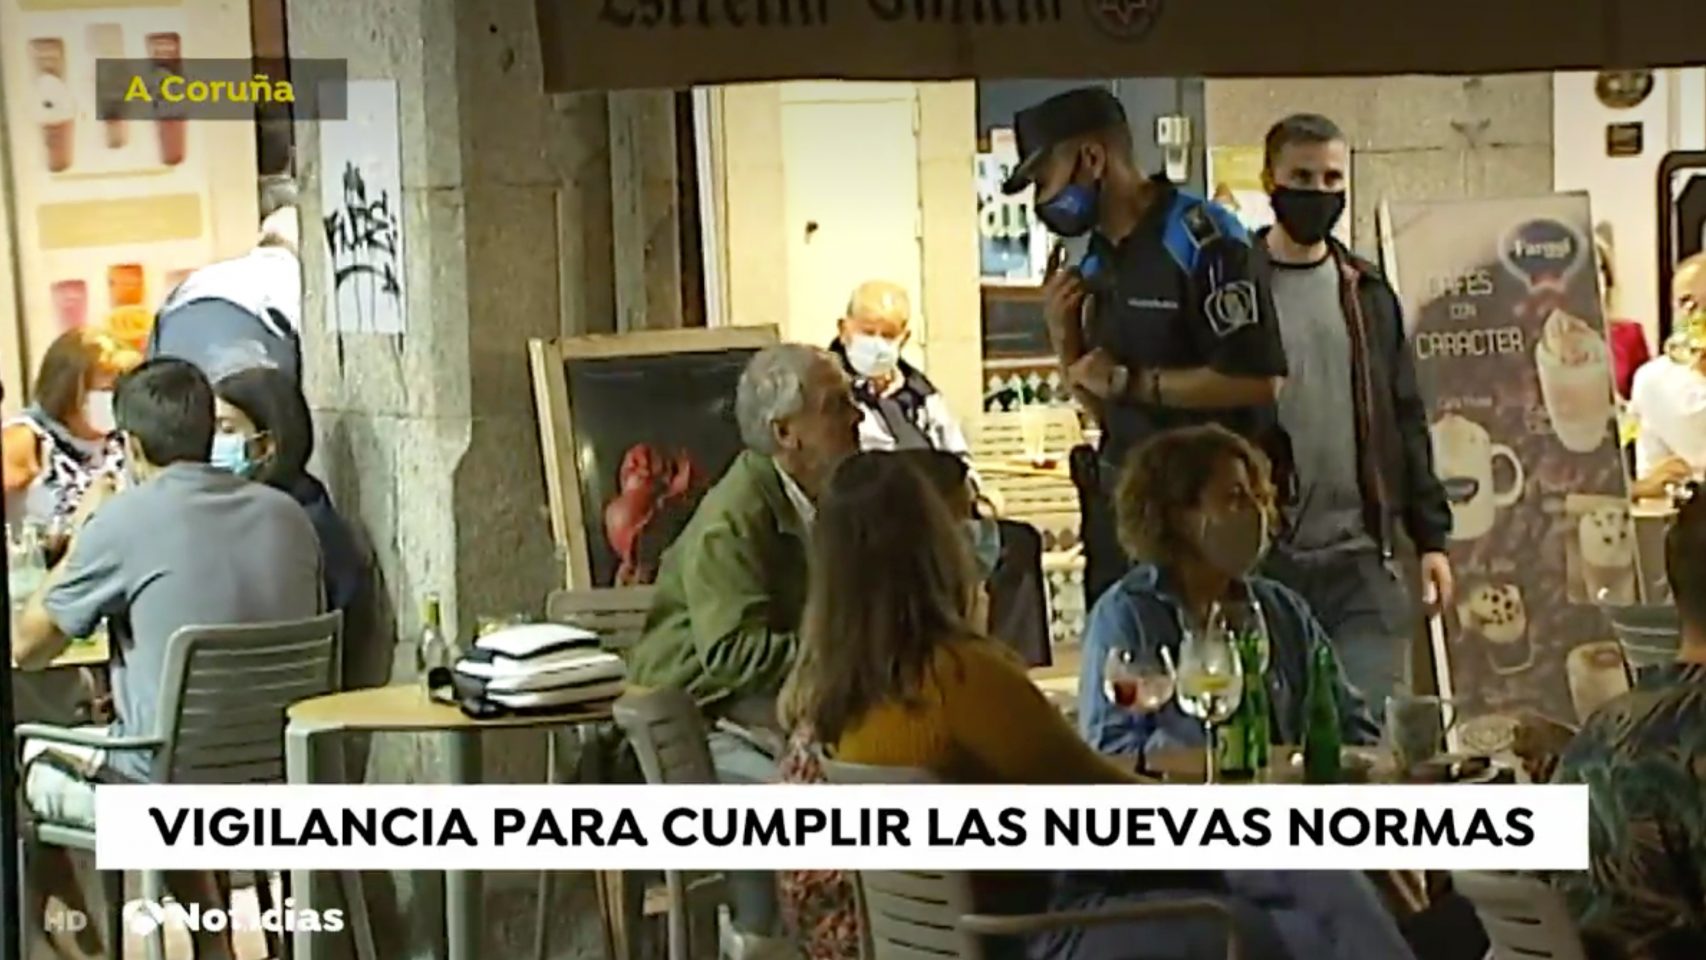 Captura del vídeo de Antena 3 sobre la vigilancia en A Coruña 